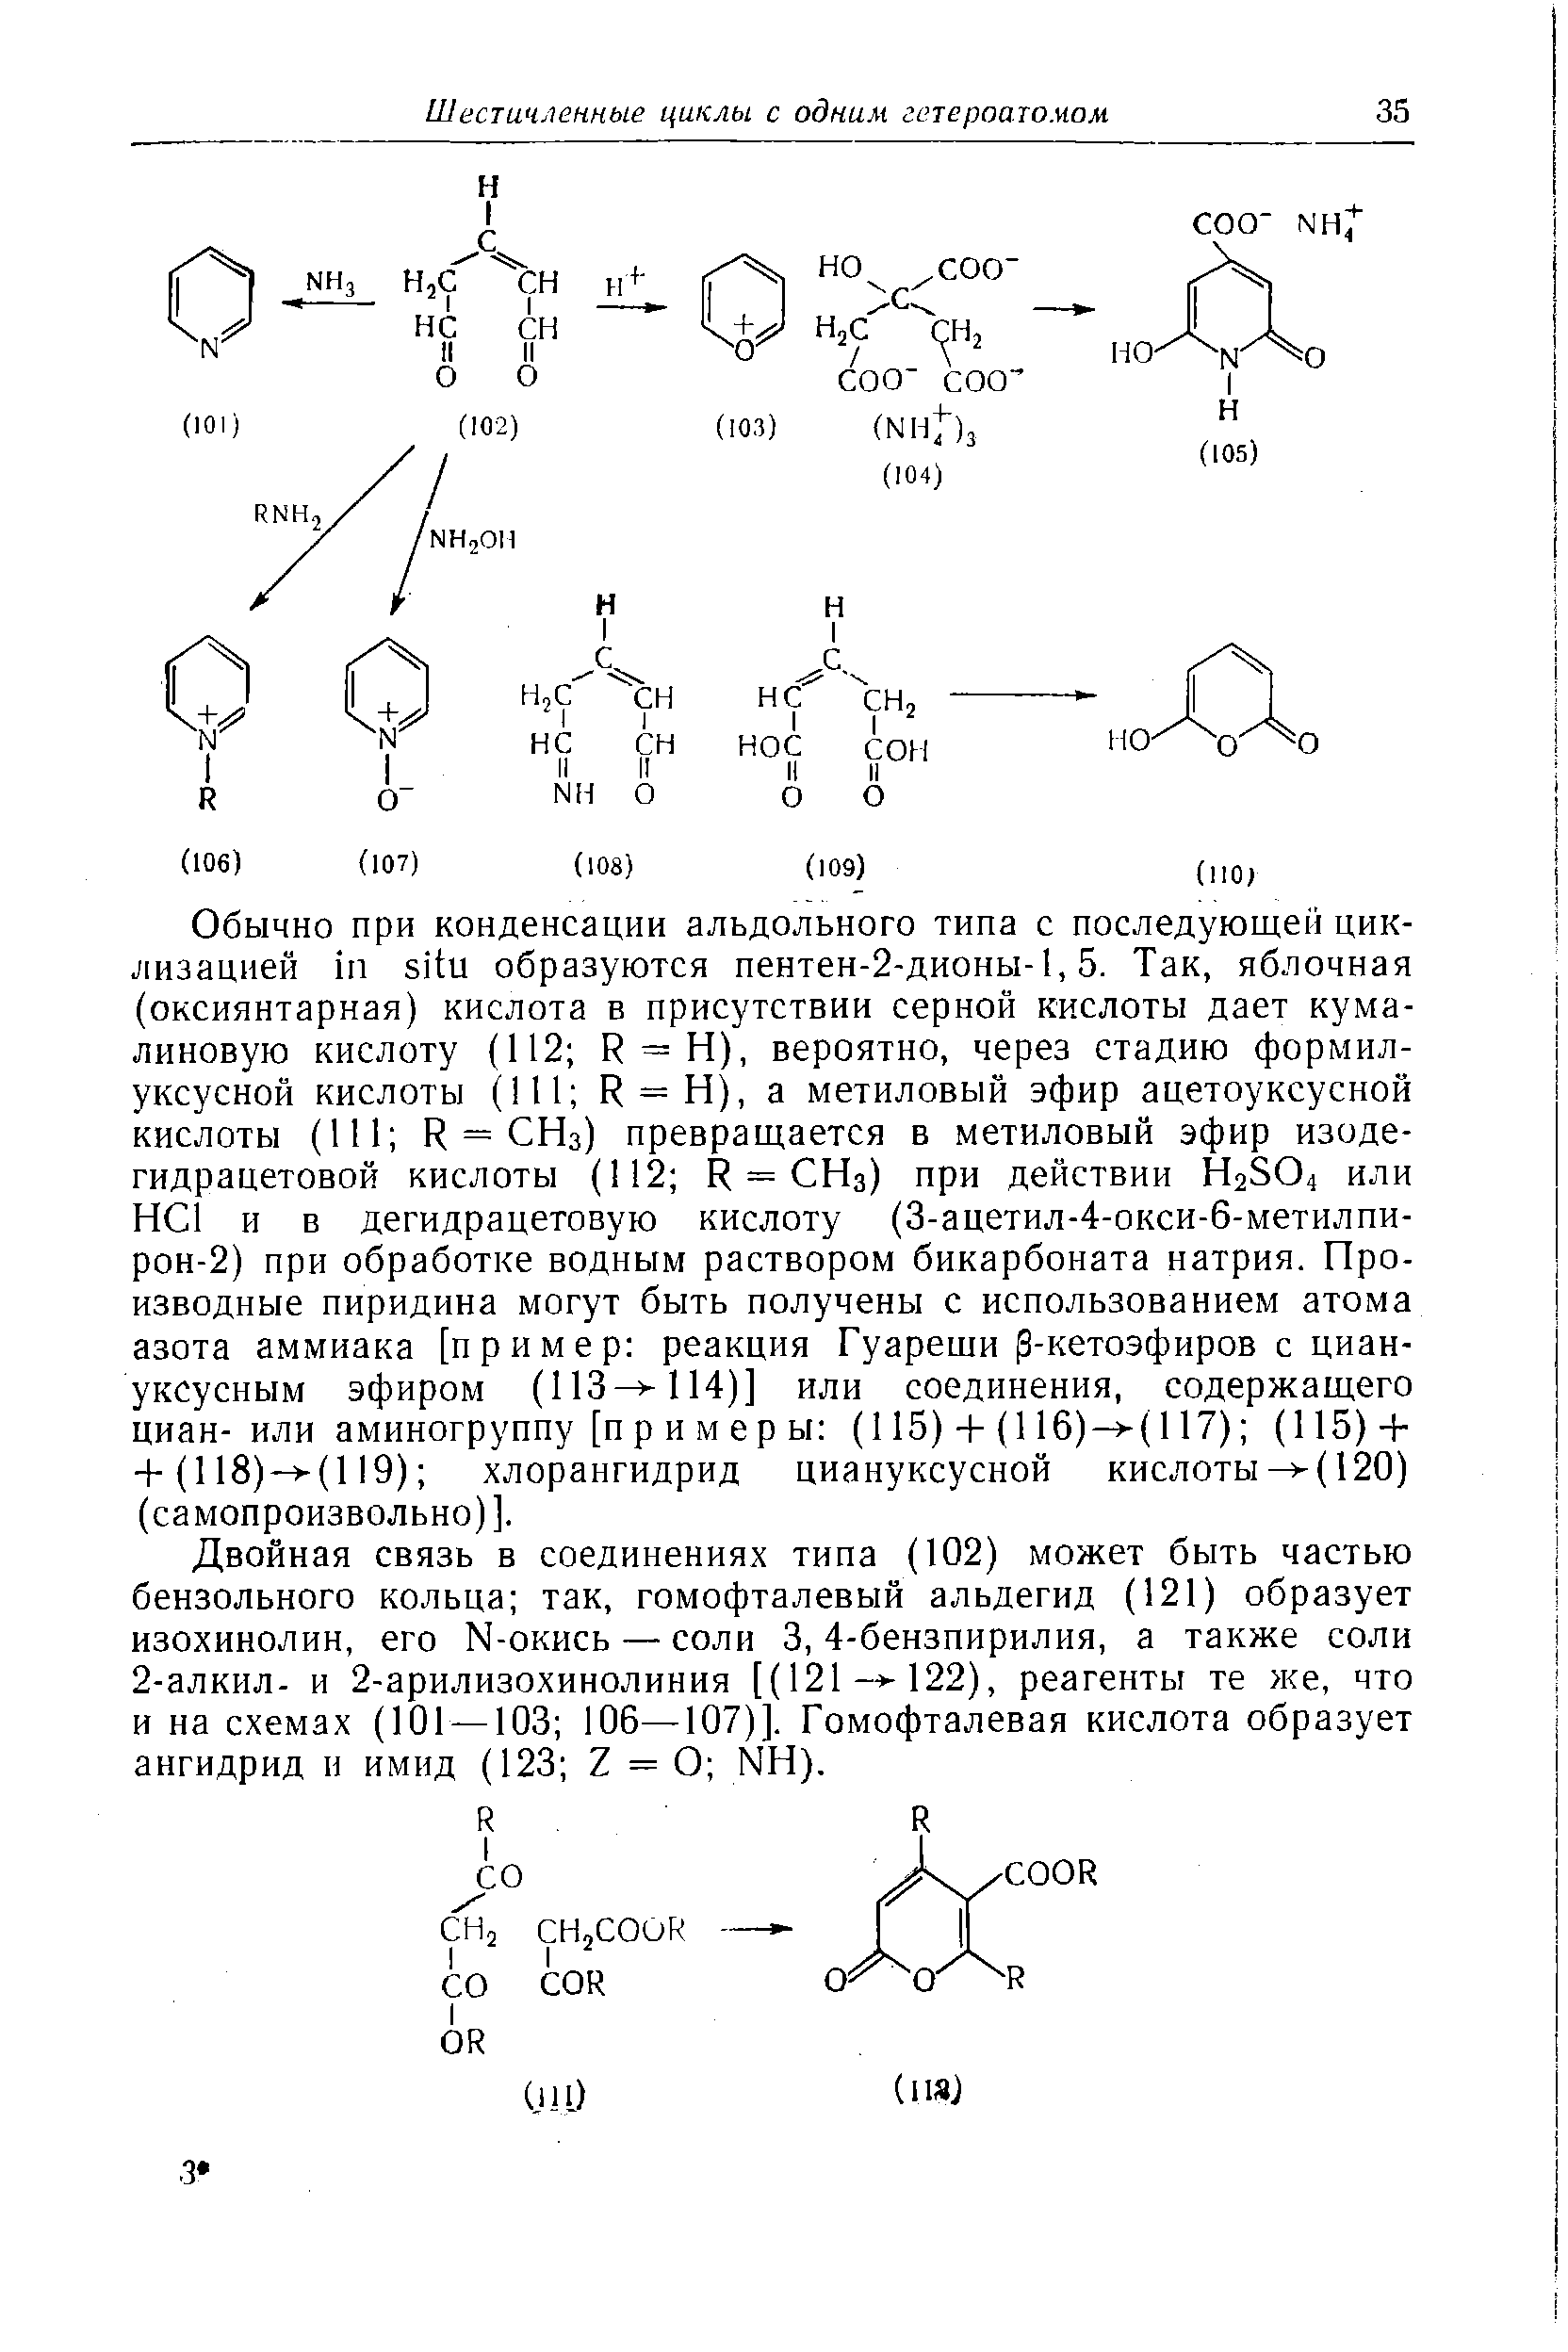 Двойная связь в соединениях типа (102) может быть частью бензольного кольца так, гомофталевый альдегид (121) образует изохинолин, его N-окись — соли 3, 4-бензпирилия, а также соли 2-алкил- и 2-арилизохинолиния [(121- -122), реагенты те же, что и на схемах (101 — 103 106—107)]. Гомофталевая кислота образует ангидрид и имид (123 Z = О NH).